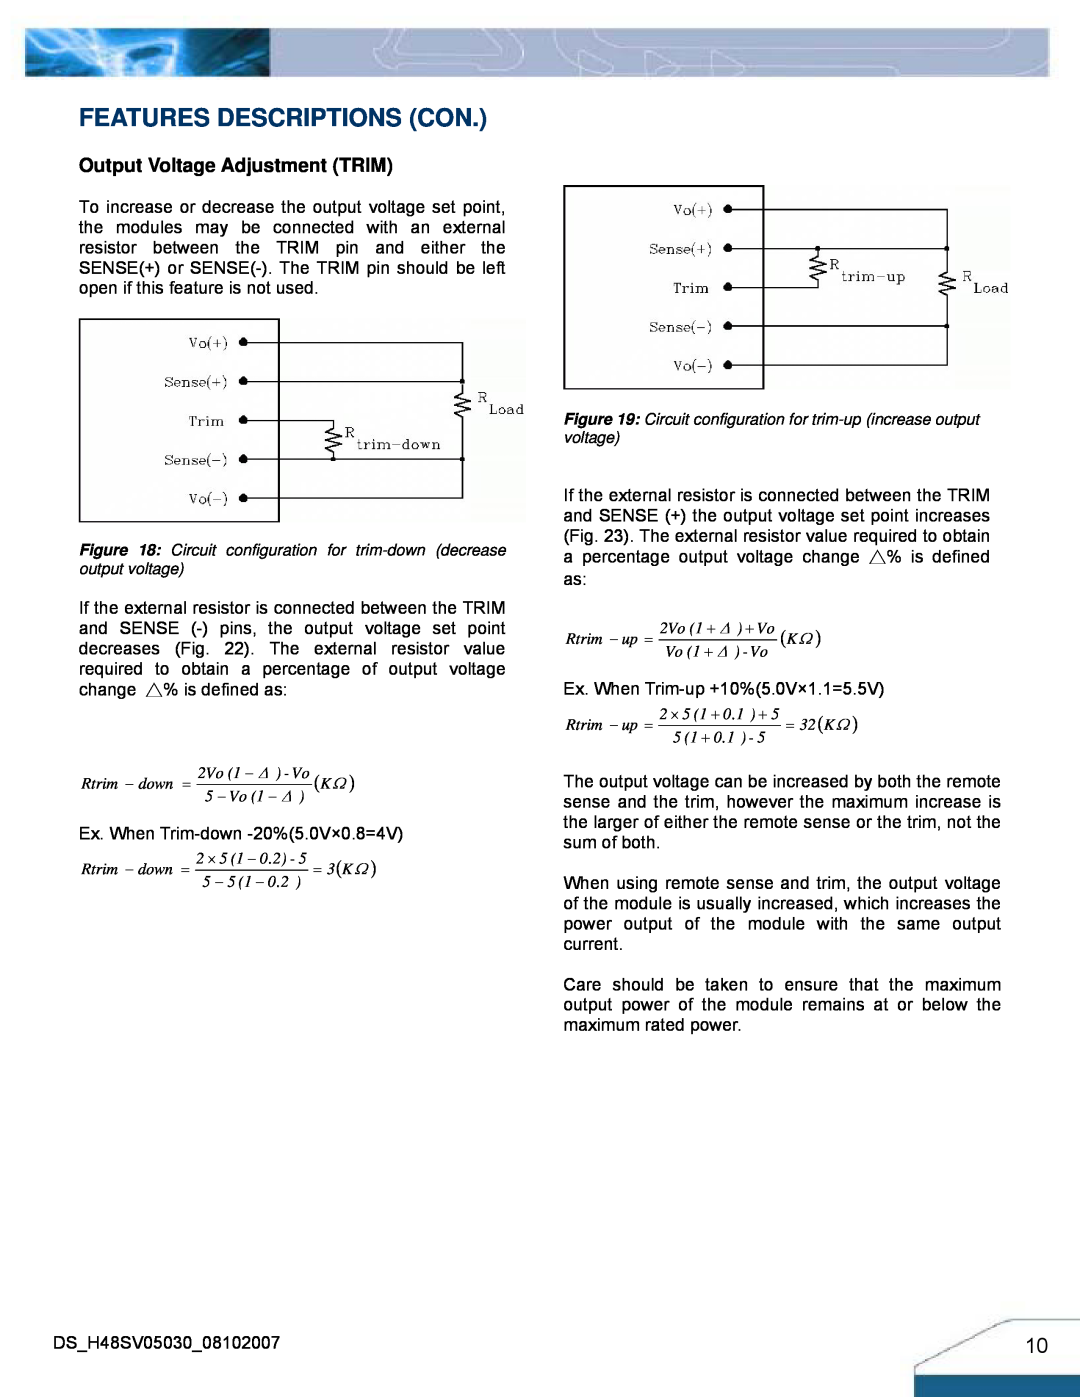 Delta Electronics H48SV manual Features Descriptions Con, Output Voltage Adjustment TRIM 